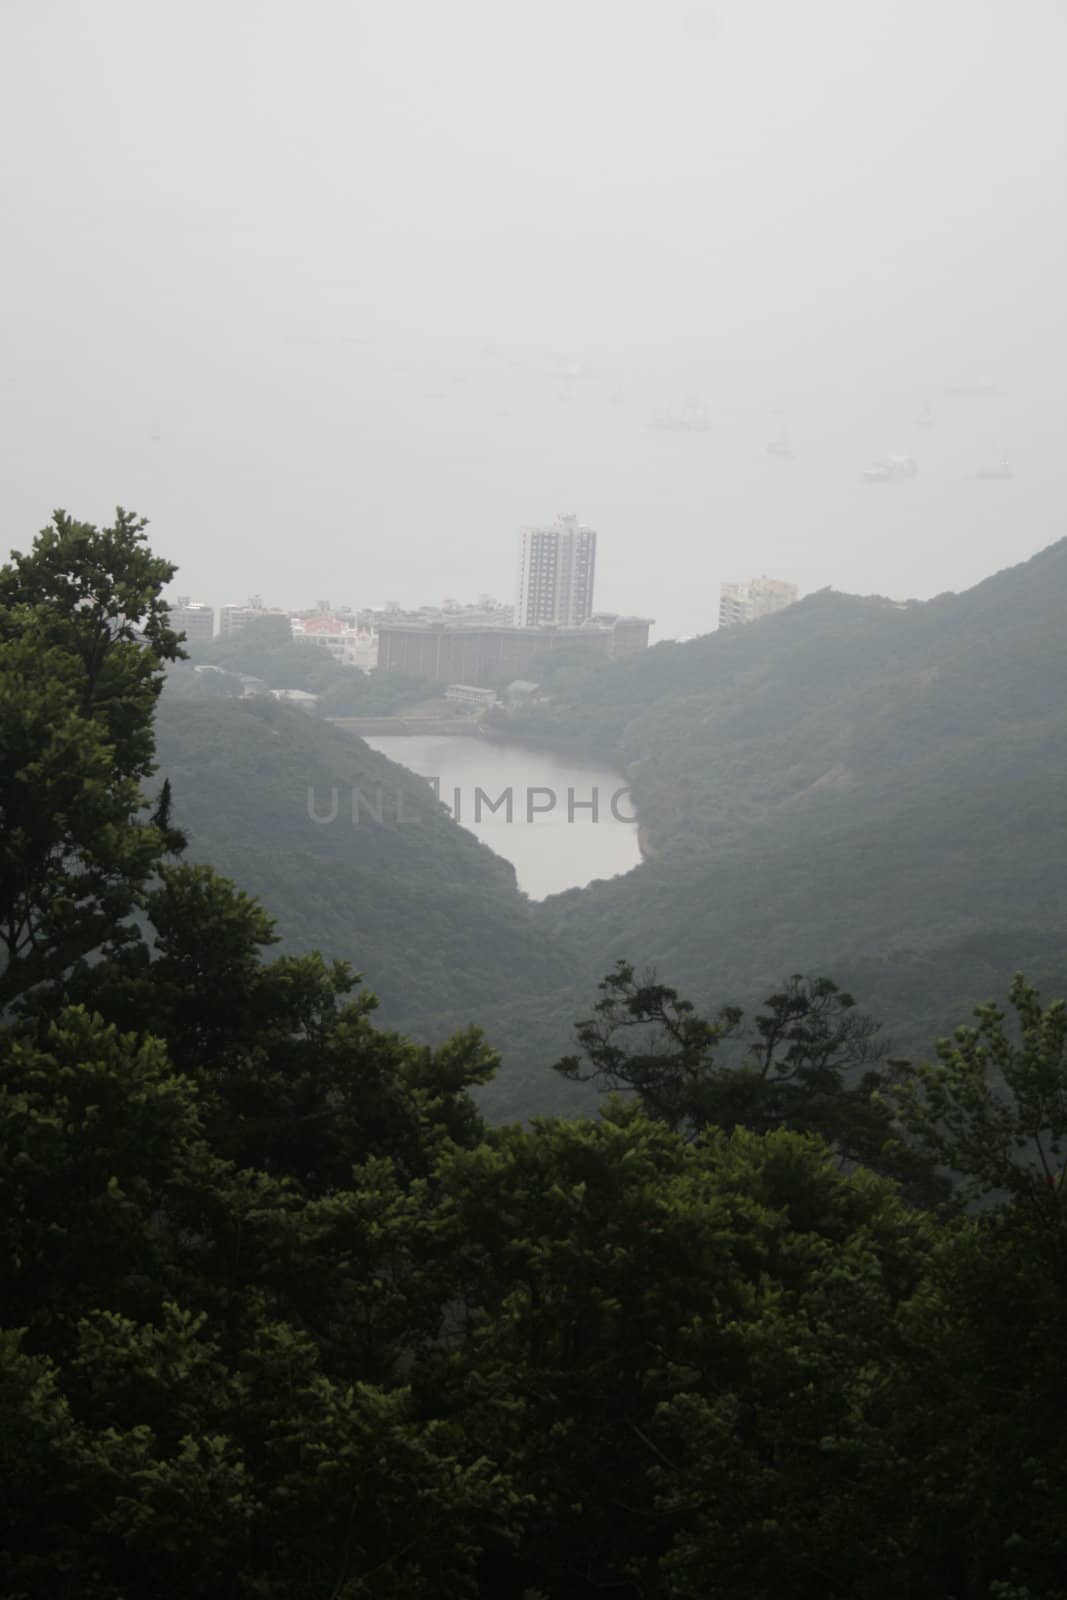 Drinking water reservoir in Hong Kong, Pok Fu Lam  by koep